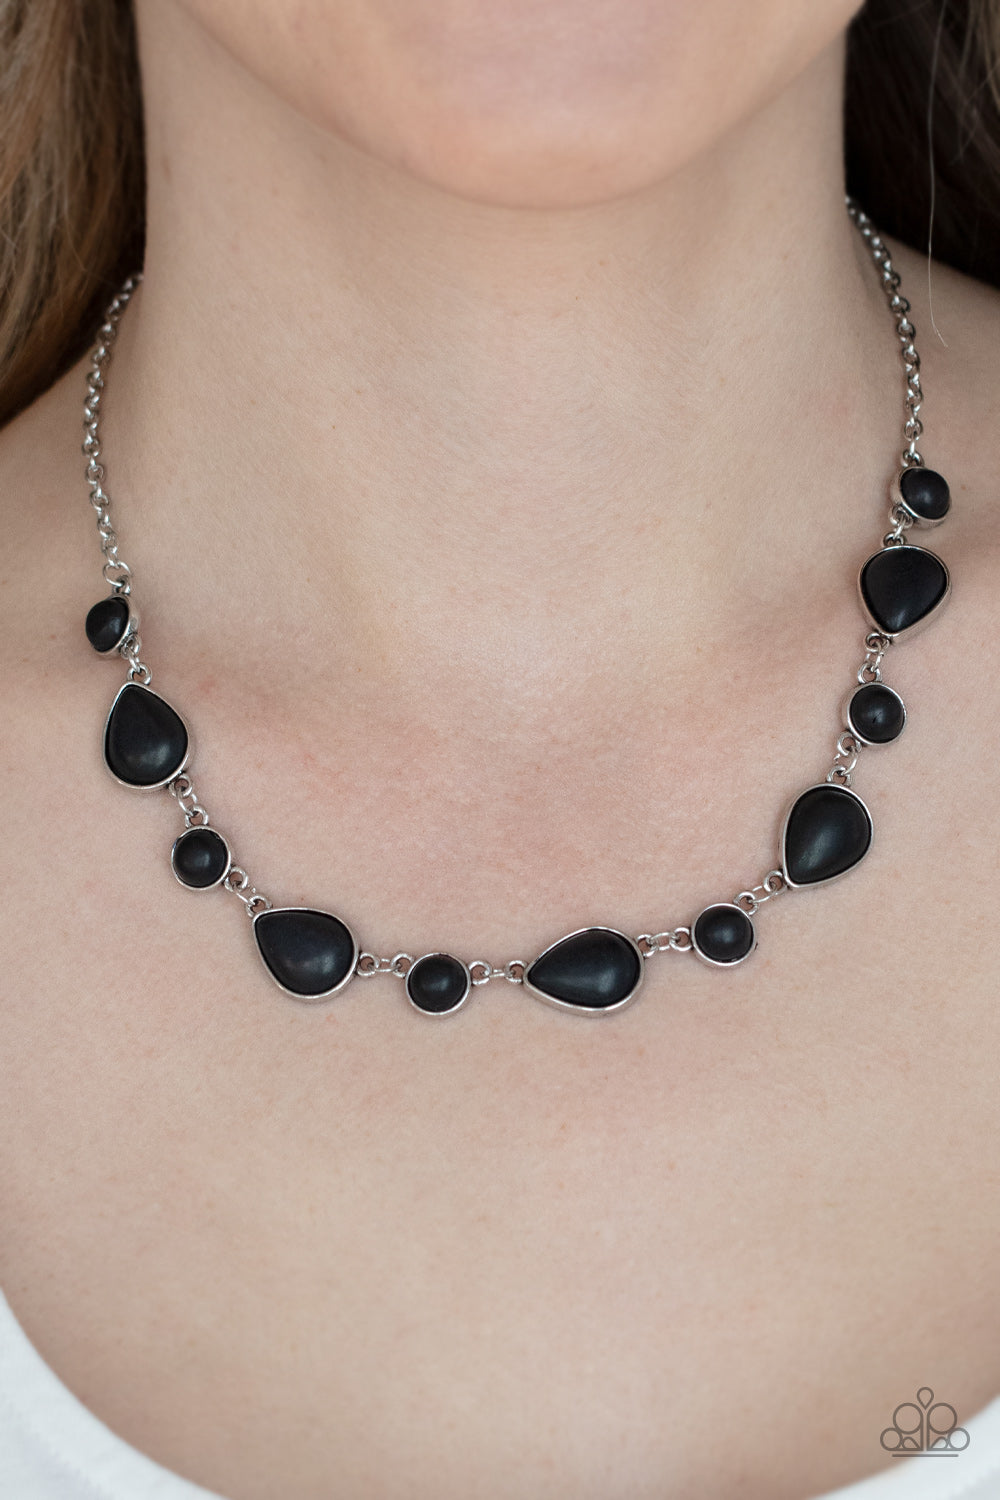 PRE-ORDER - Paparazzi Heavenly Teardrops - Black - Necklace & Earrings - $5 Jewelry with Ashley Swint